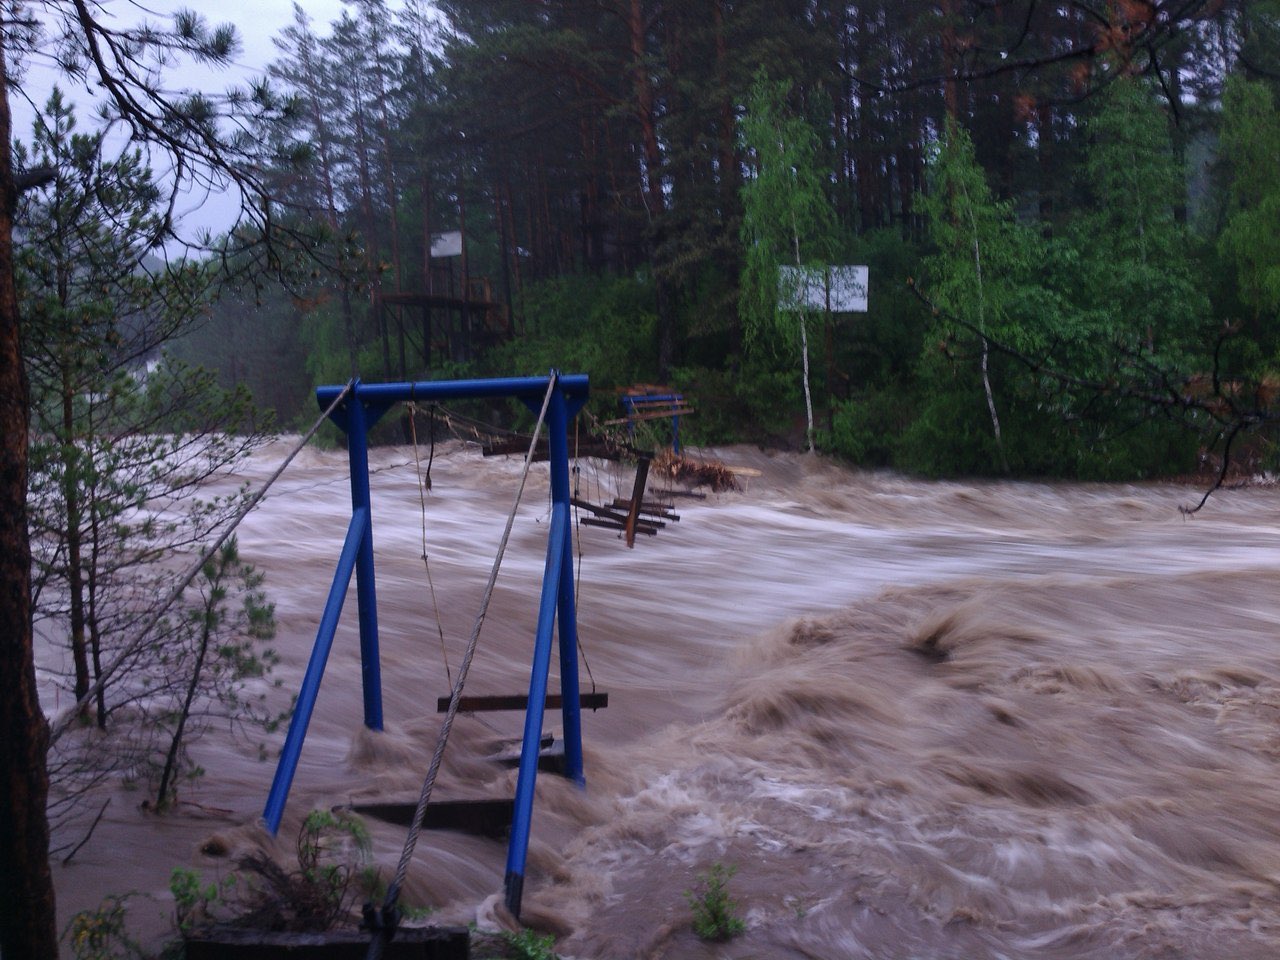 Под водой: пять лет назад в Республике Алтай случилось наводнение